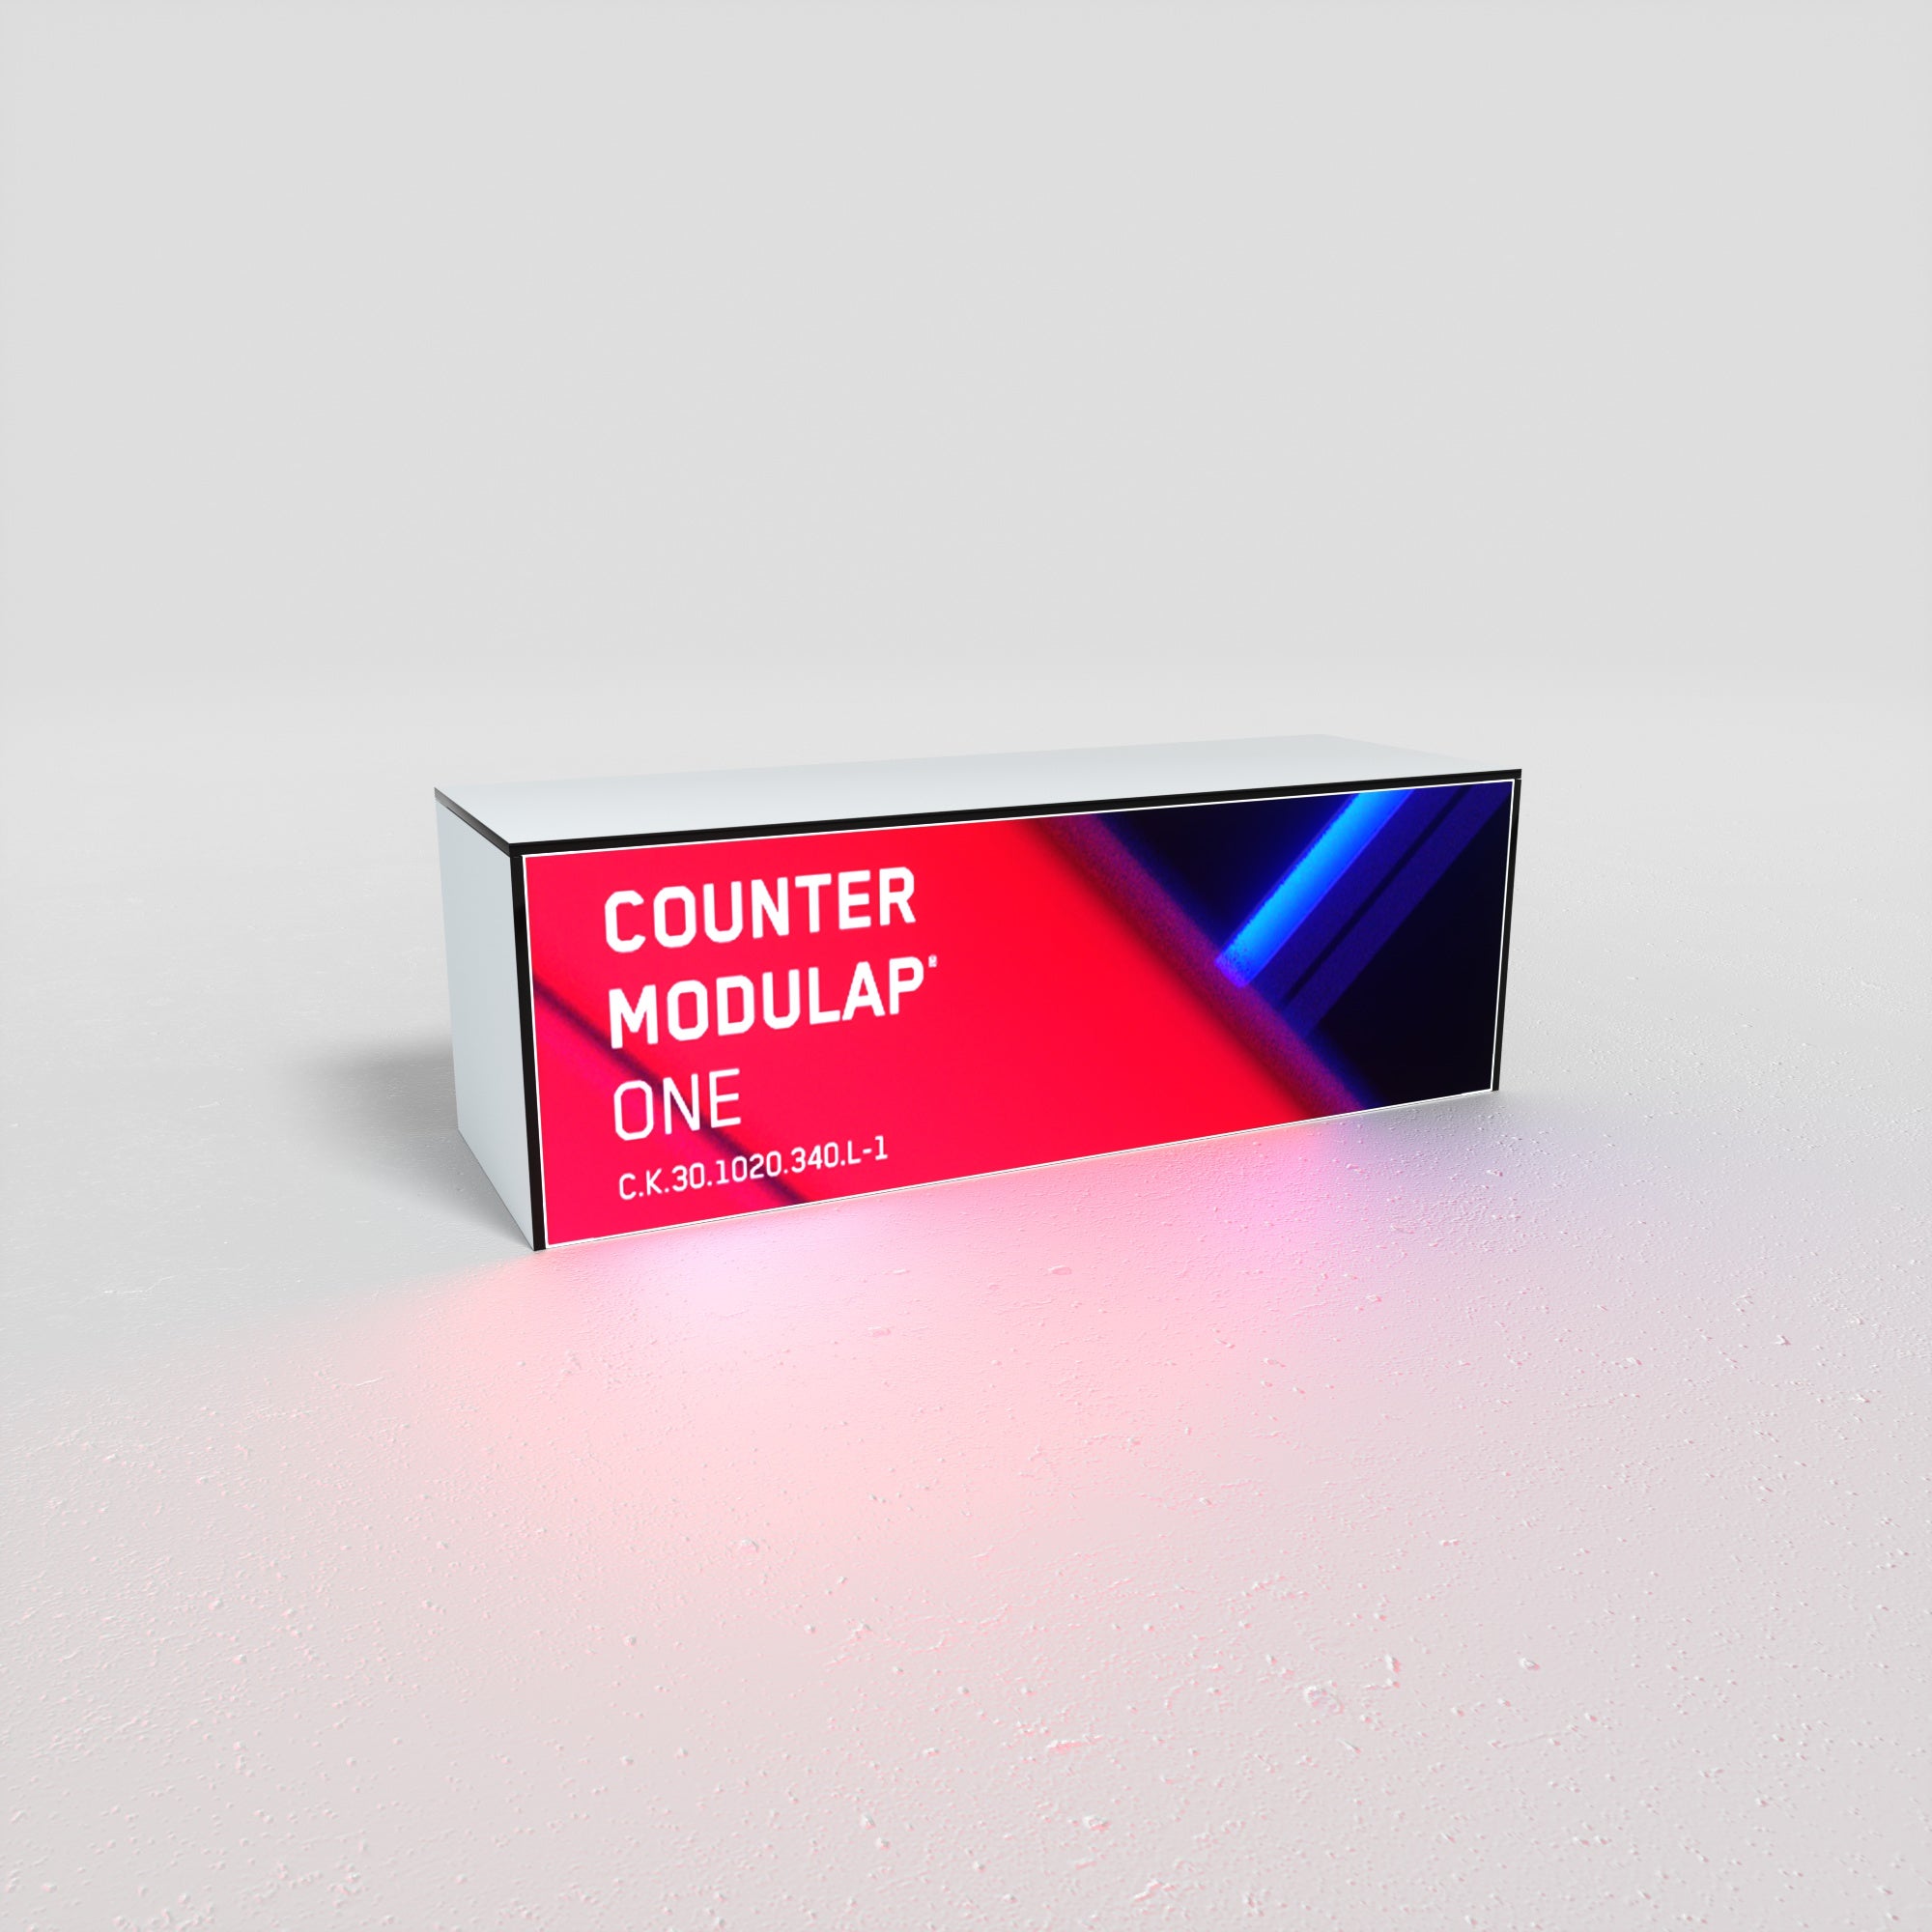 Mobiler Modulap Counter C.K 330 low als Produktaufsteller und Design-Element für Messen, Brand Spaces und Popup-Stores